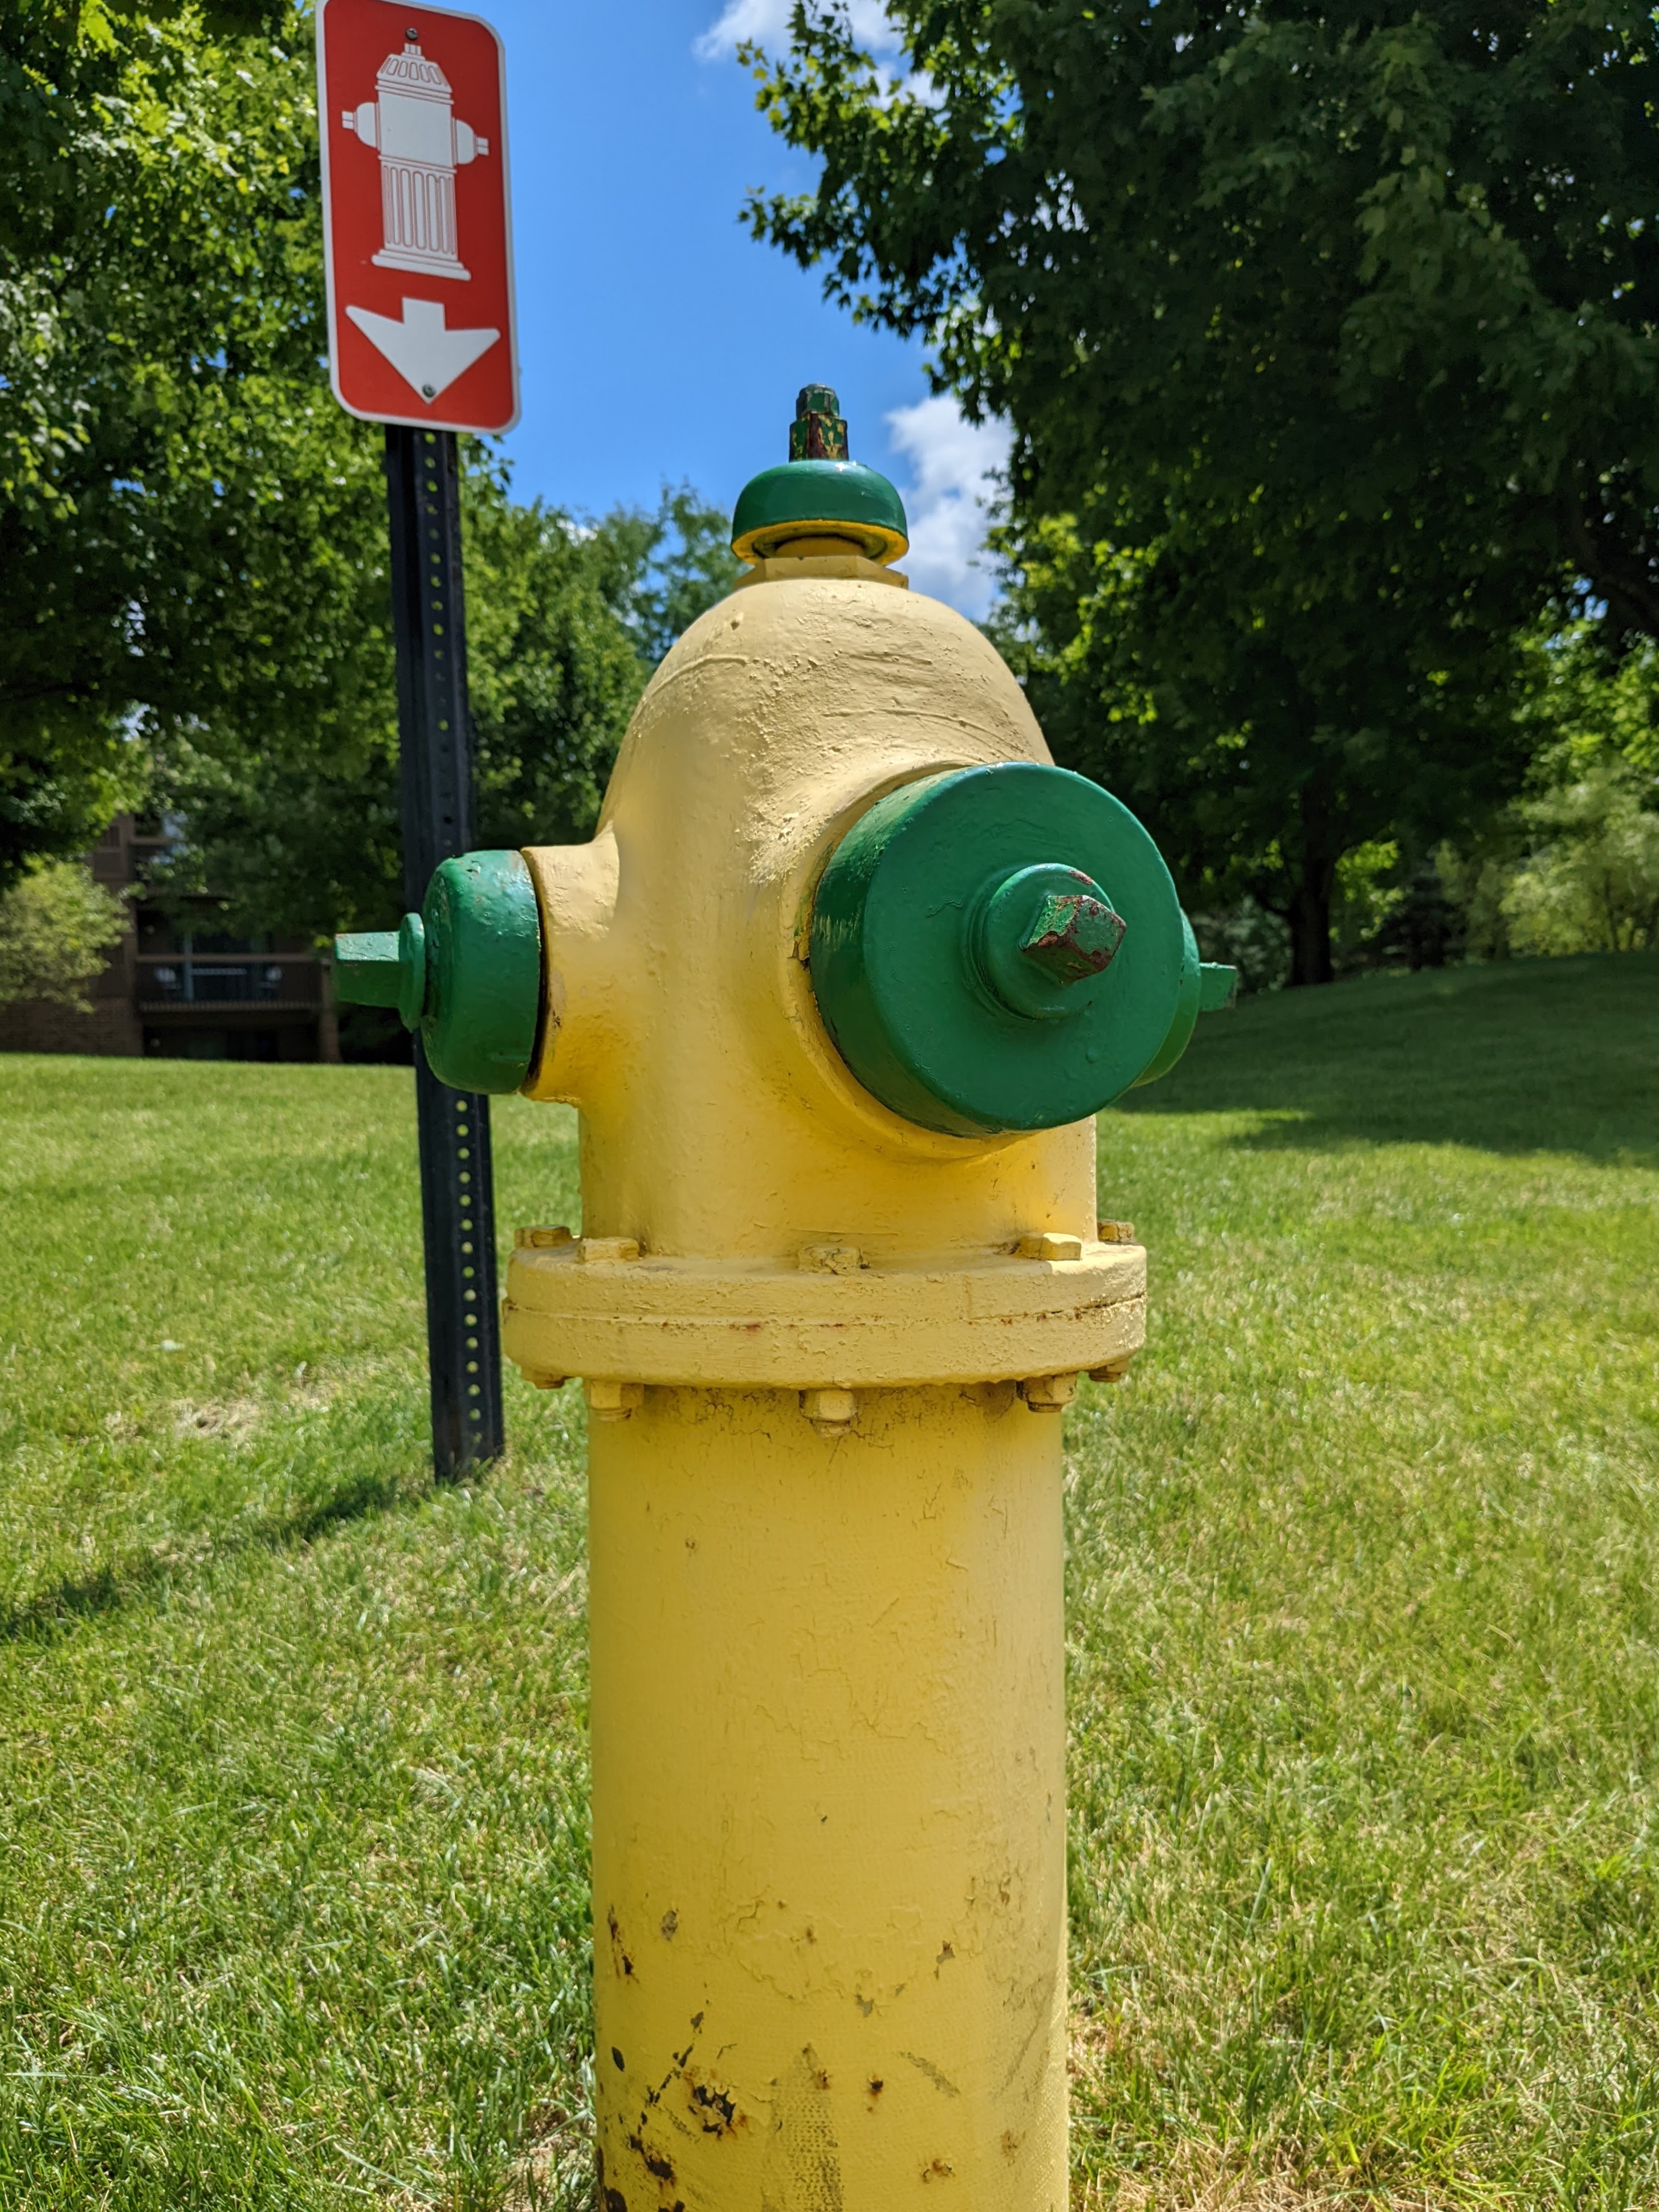 Un idrante antincendio giallo con un cartello rosso dietro.